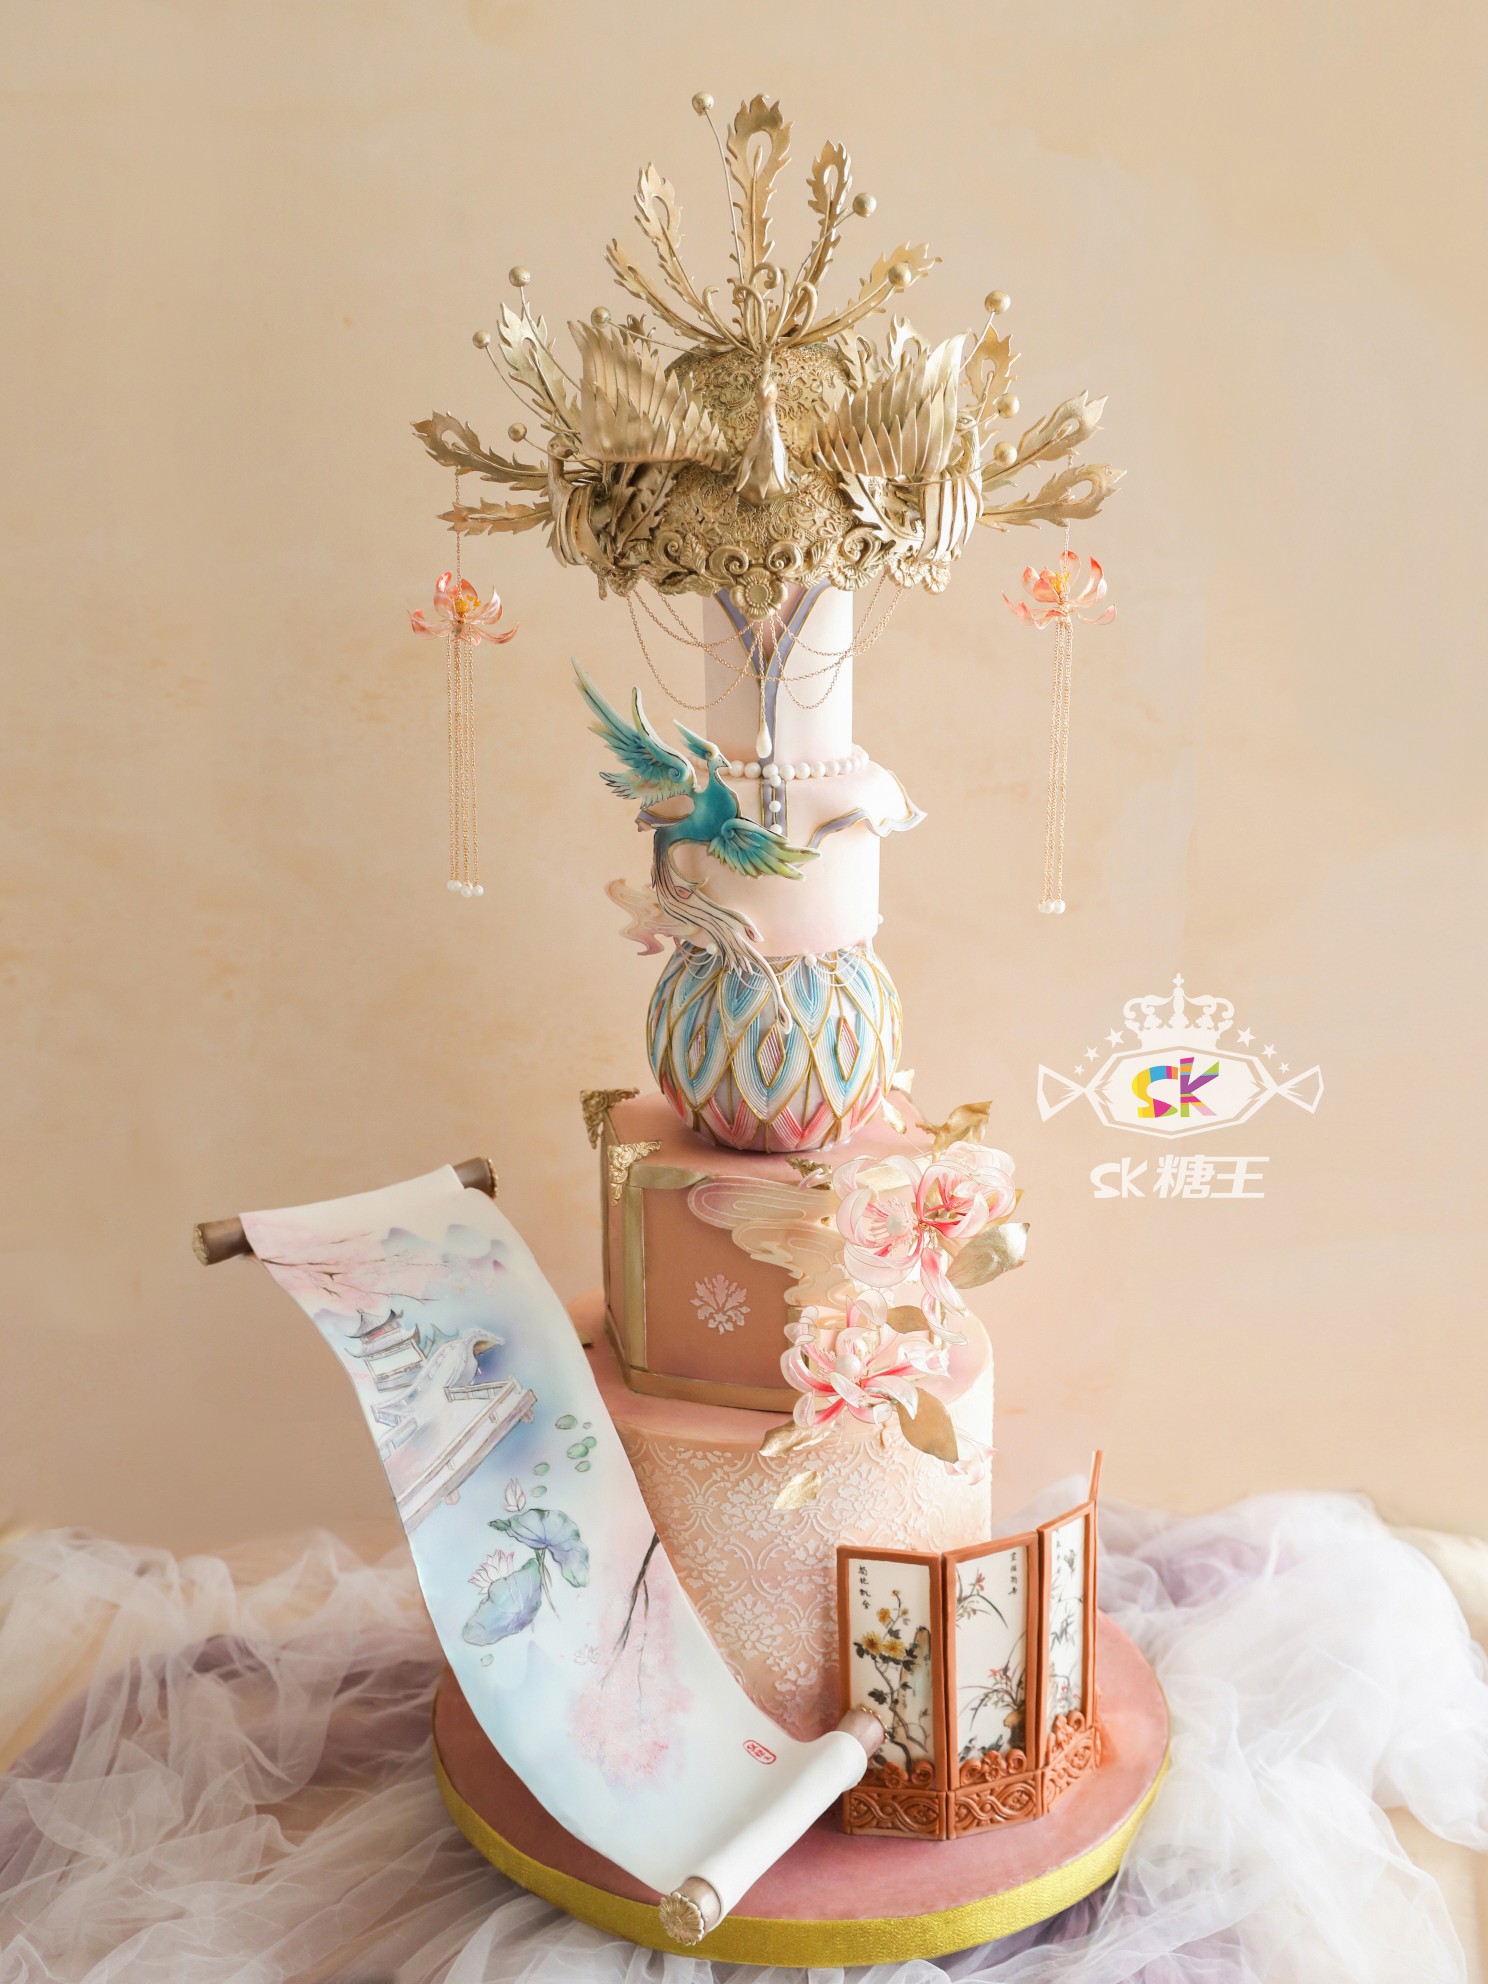 翻糖婚礼蛋糕 花的物语 美美的 - 堆糖，美图壁纸兴趣社区